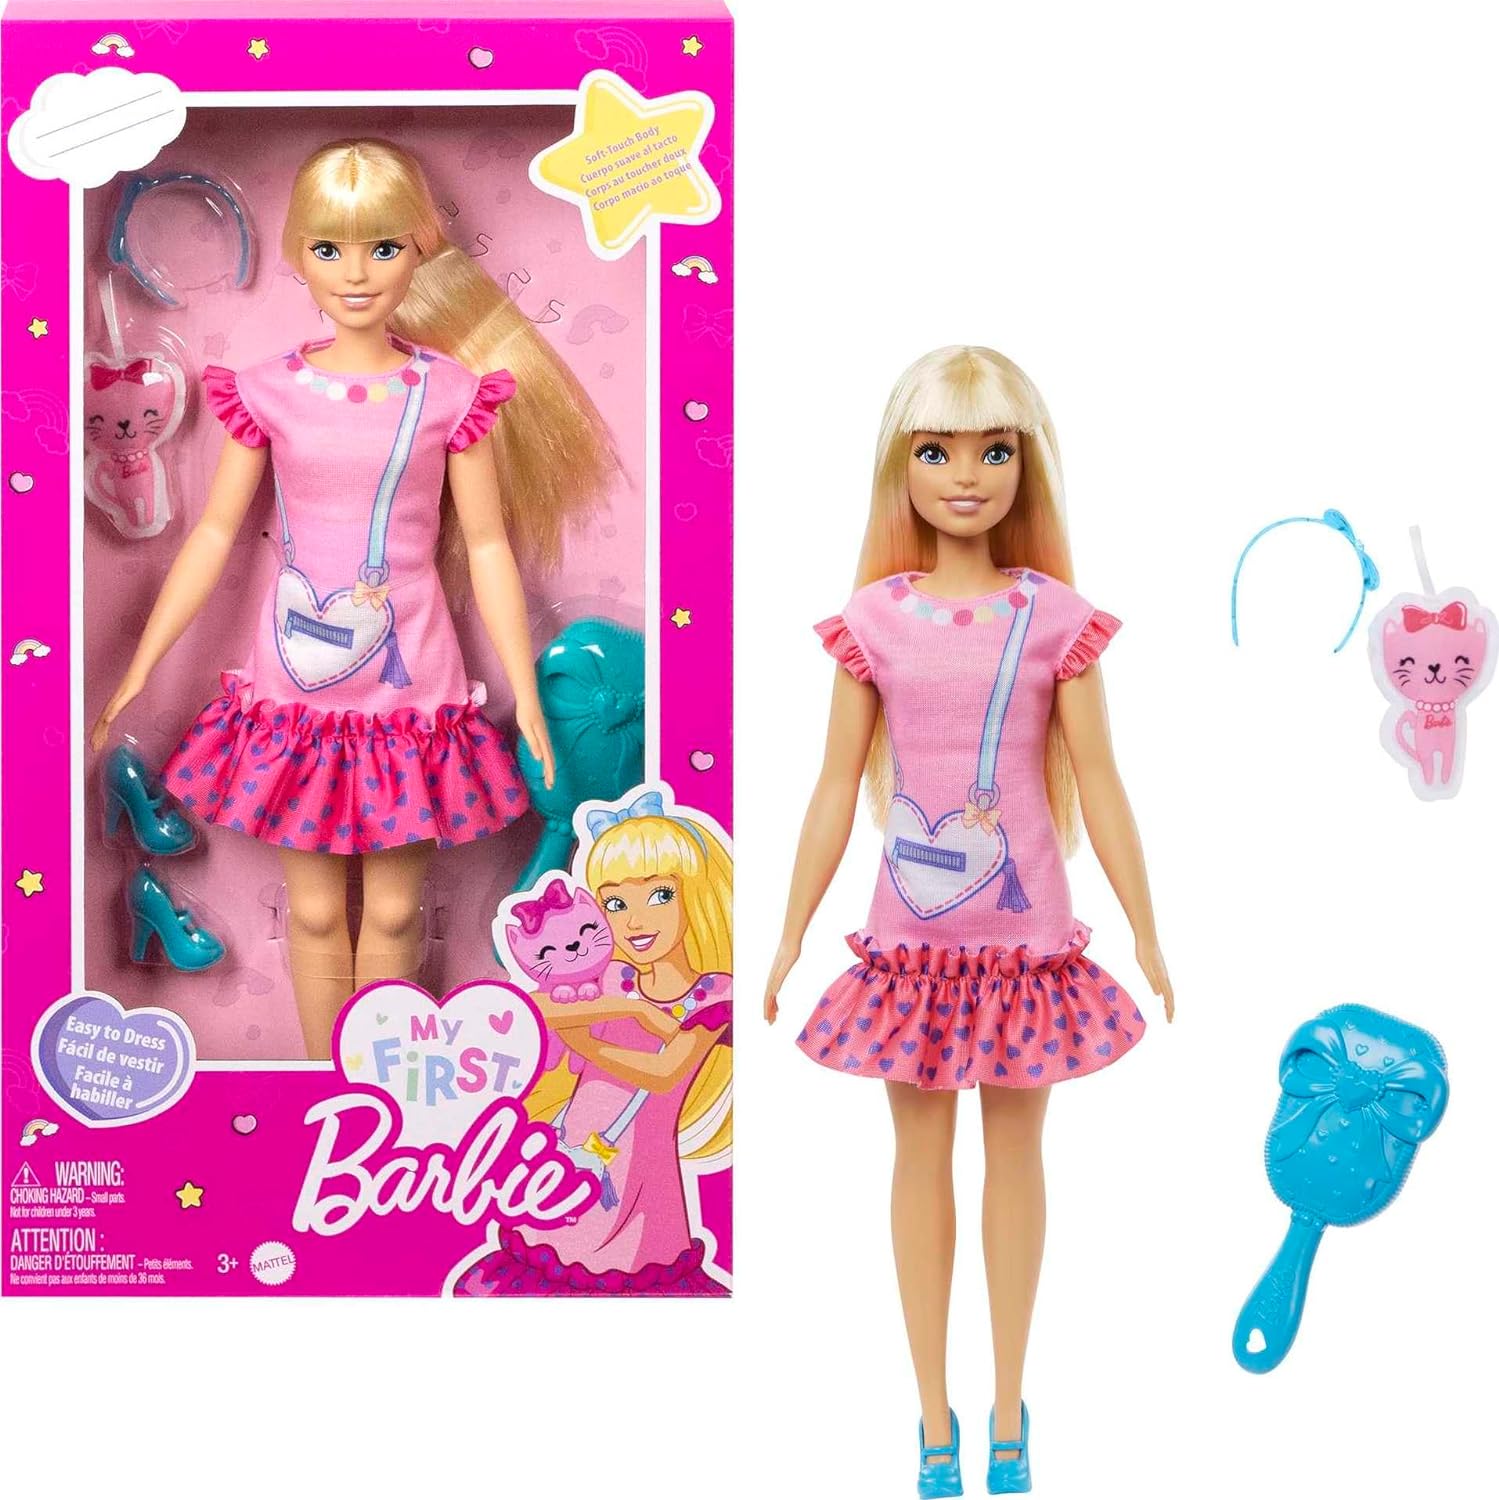 13.5" My First Barbie Preschool Dolls: Malibu w/ Kitten or Renee w/ Squirrel $8.39, Brooklyn w/ Plush Poodle $9.79 + Free Shipping w/ Prime or on $35+